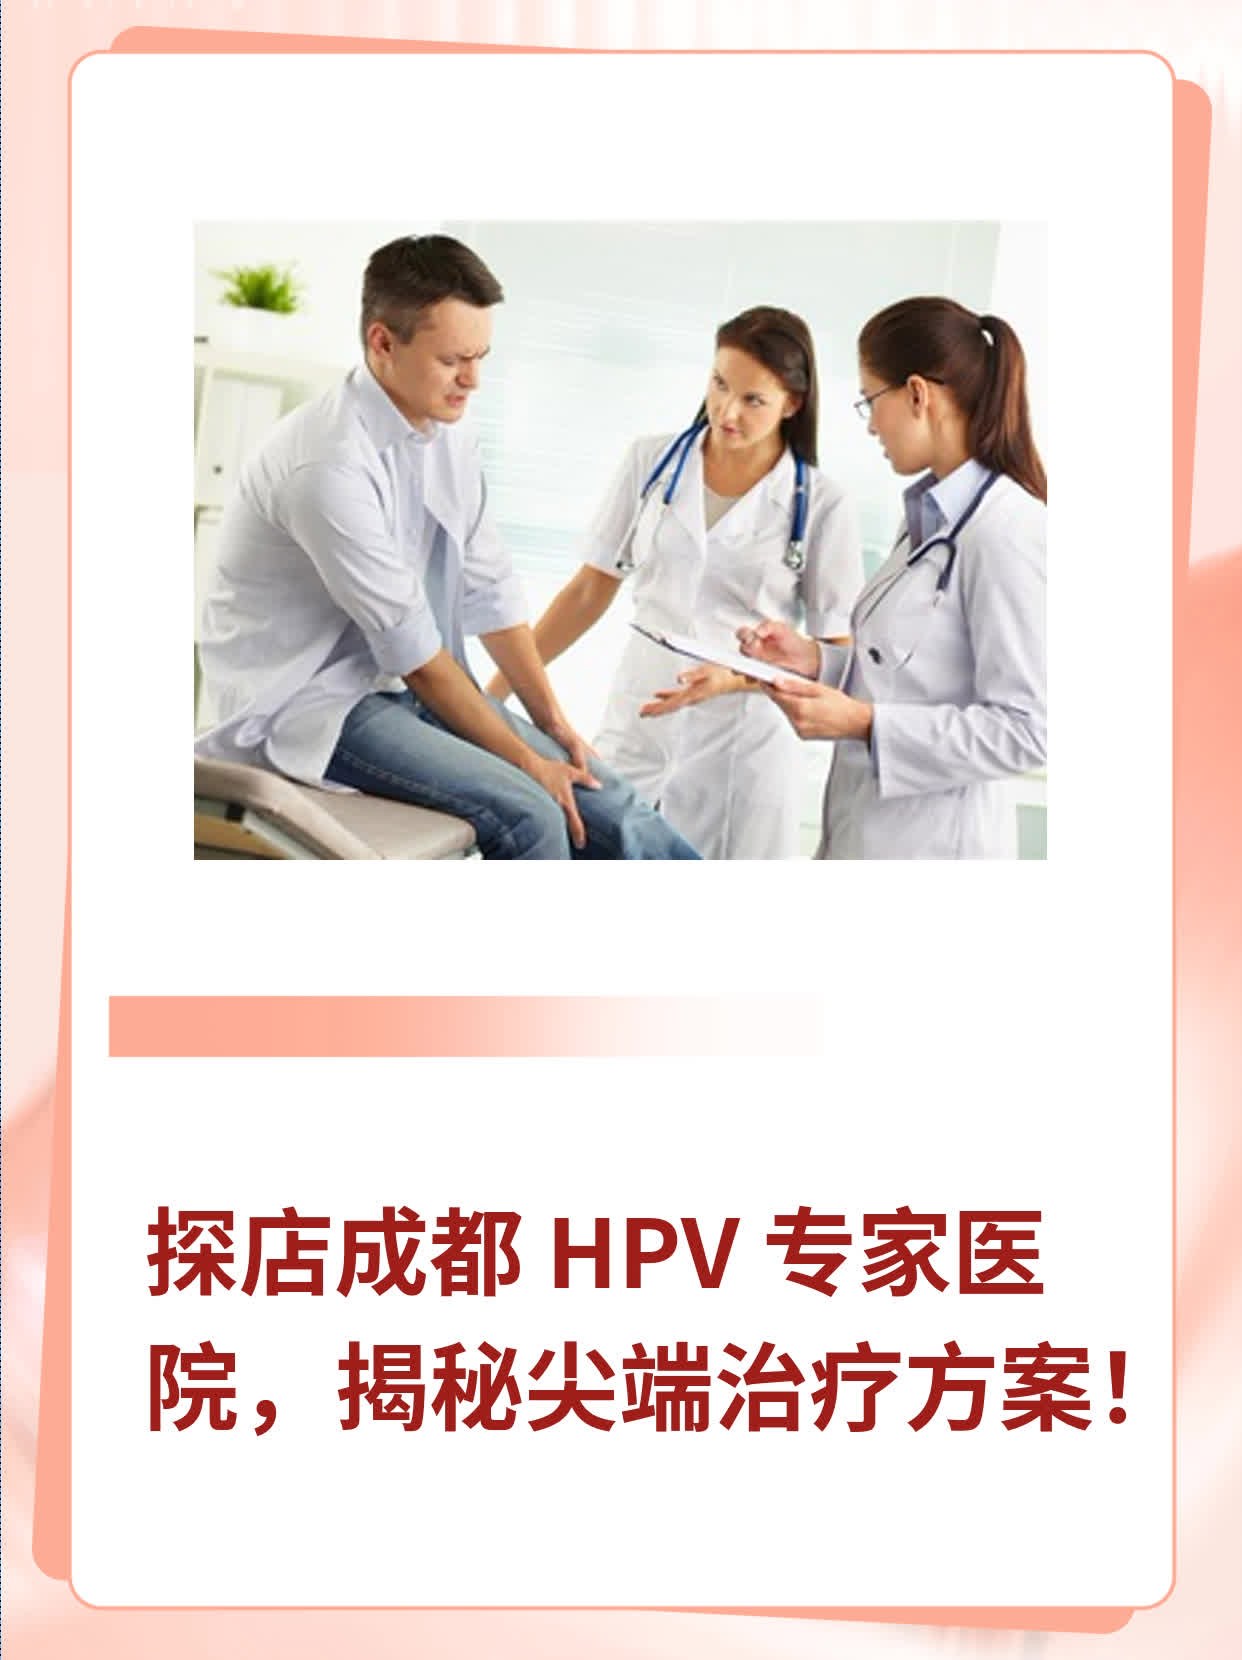 探店成都 HPV 专家医院，揭秘尖端治疗方案！